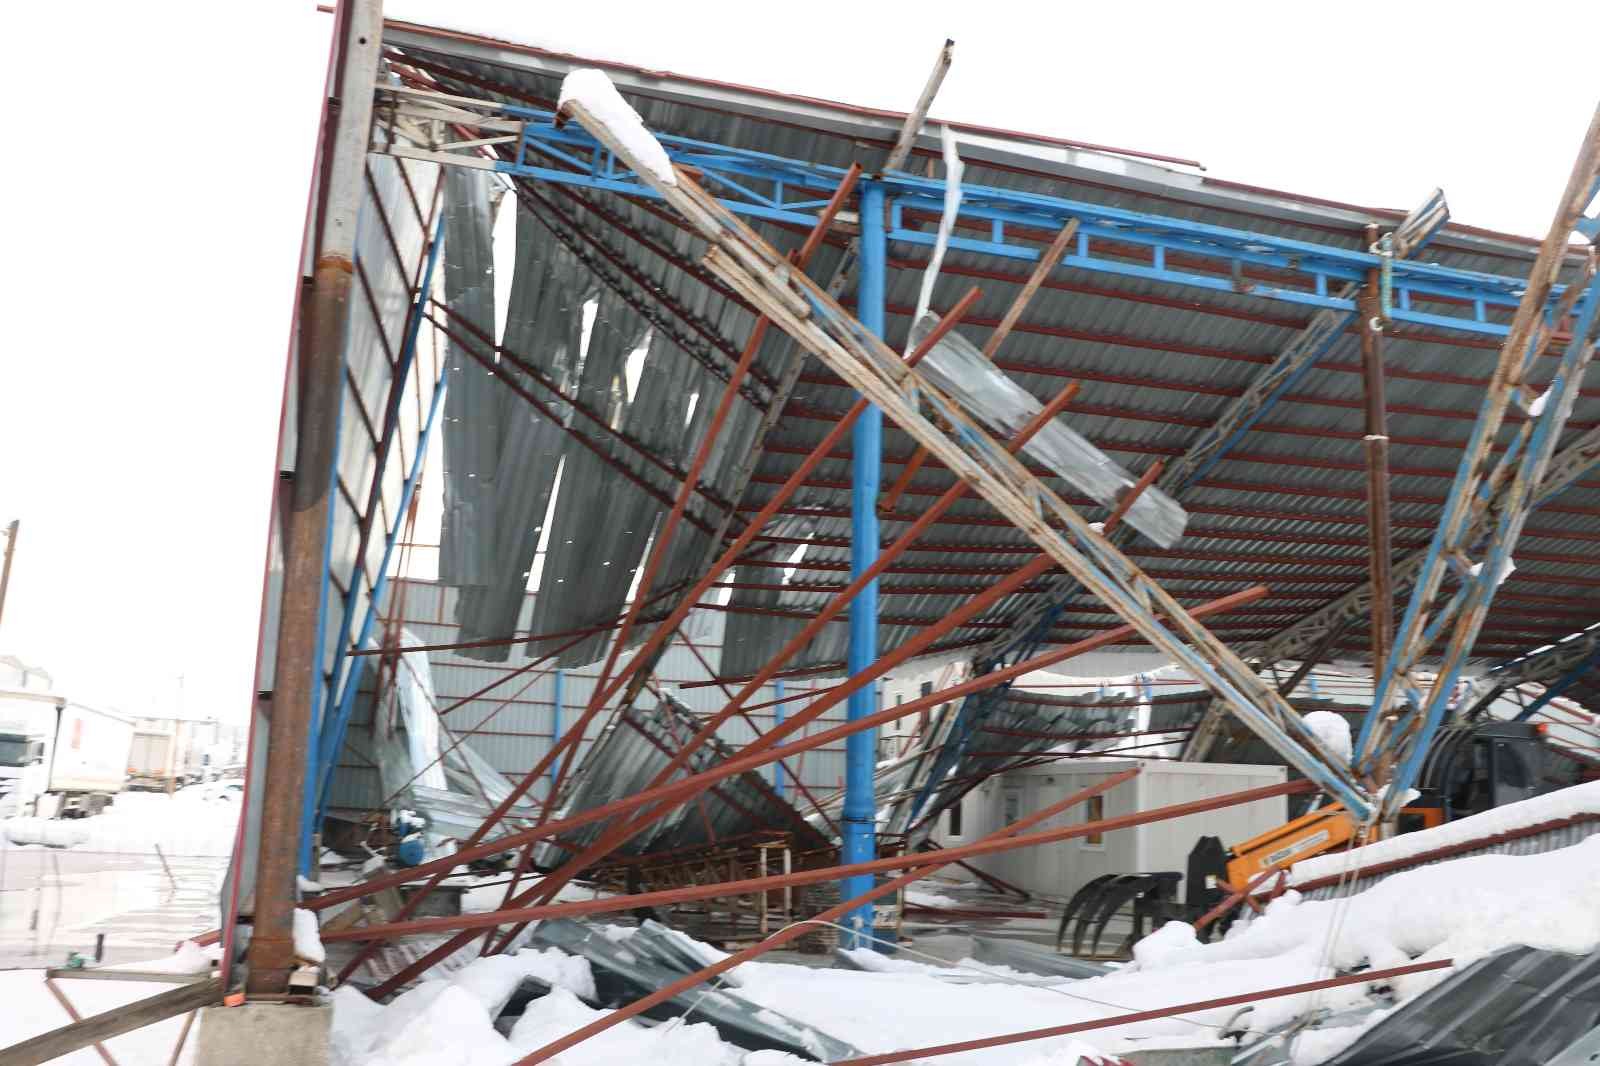 Kara dayanamayan geri dönüşüm fabrikasının çatısı çöktü #kahramanmaras